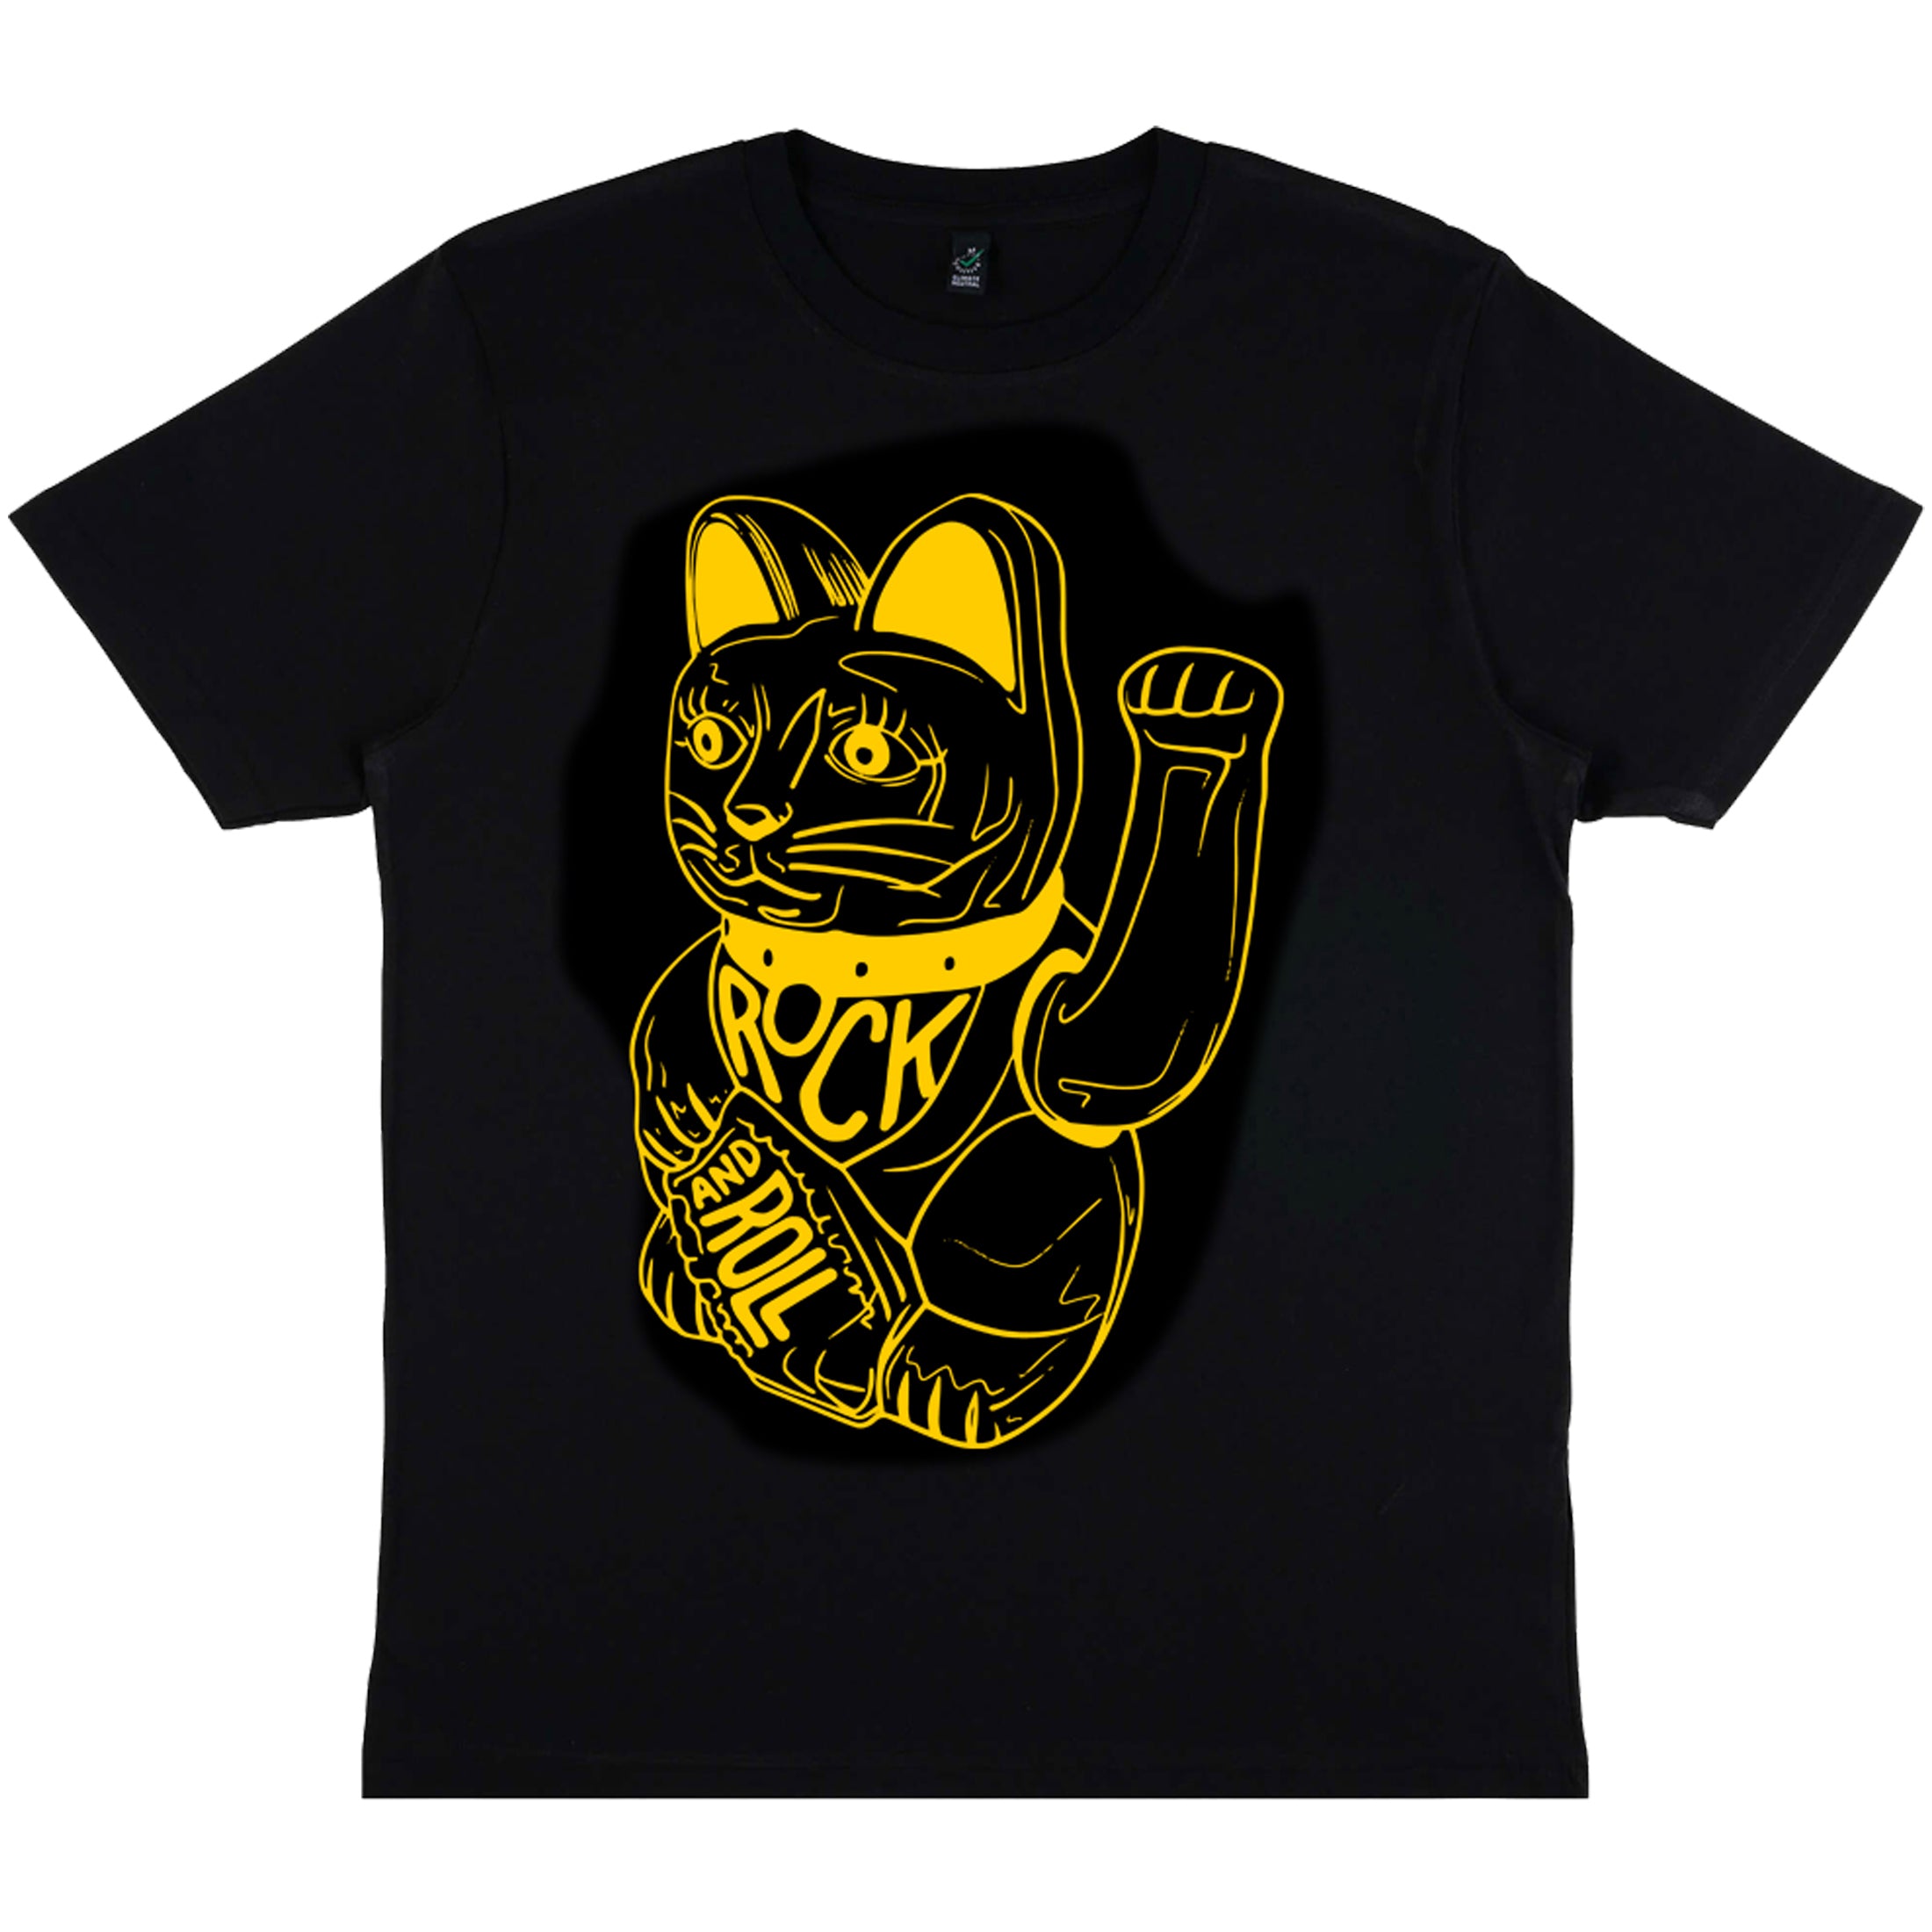 Black Lucky Cat T-Shirt by db deadbeat